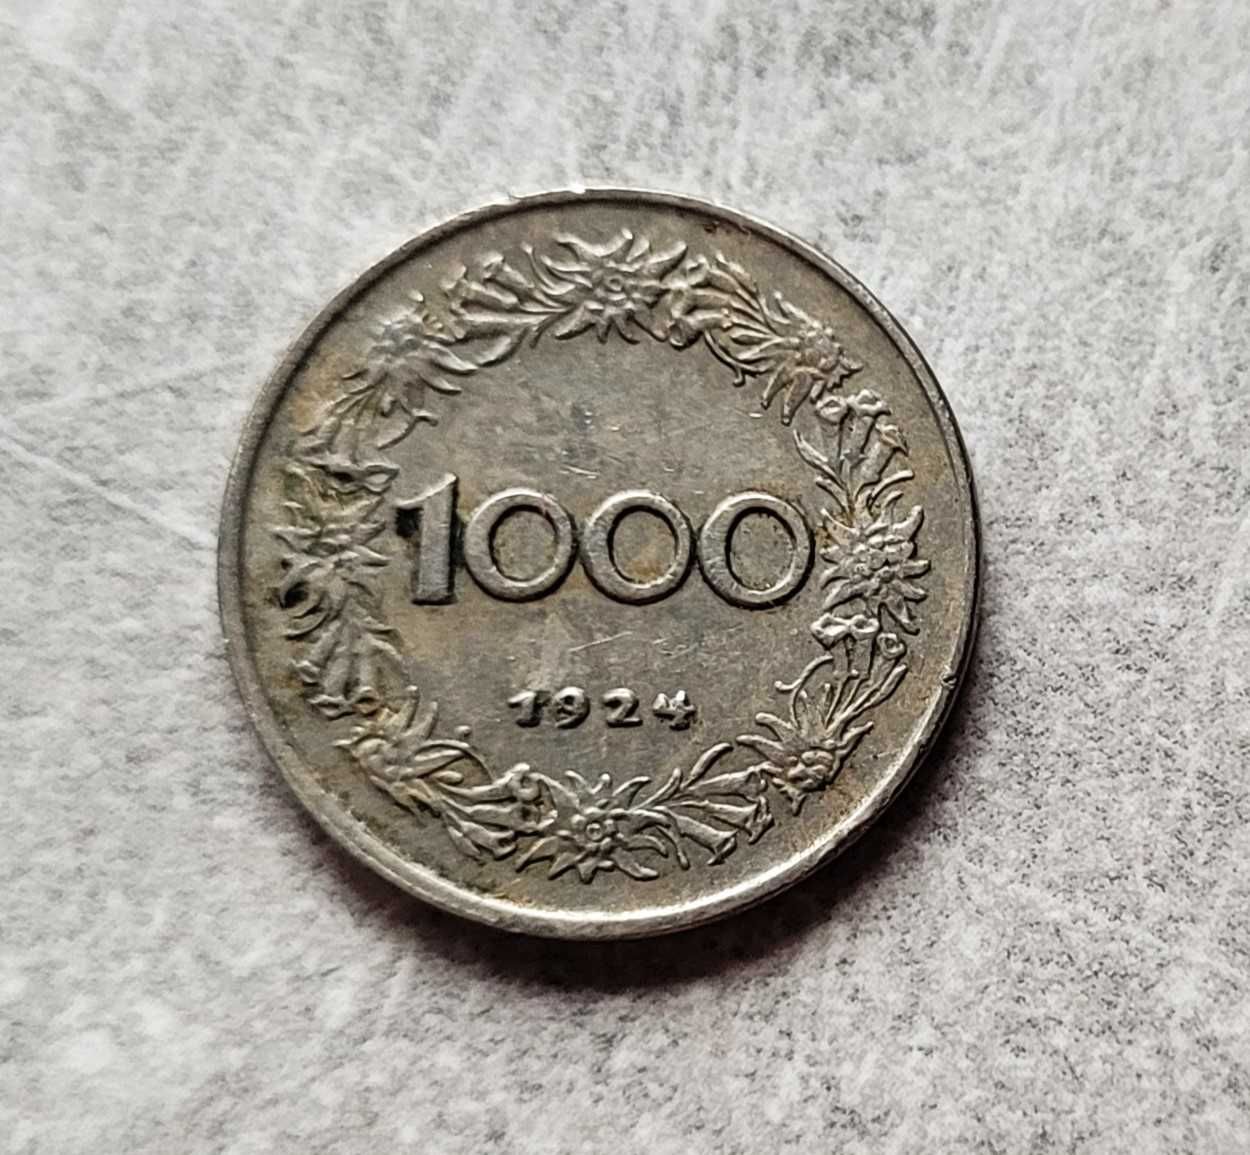 32) AUSTRIA - 1000 Koron - 1924 r.